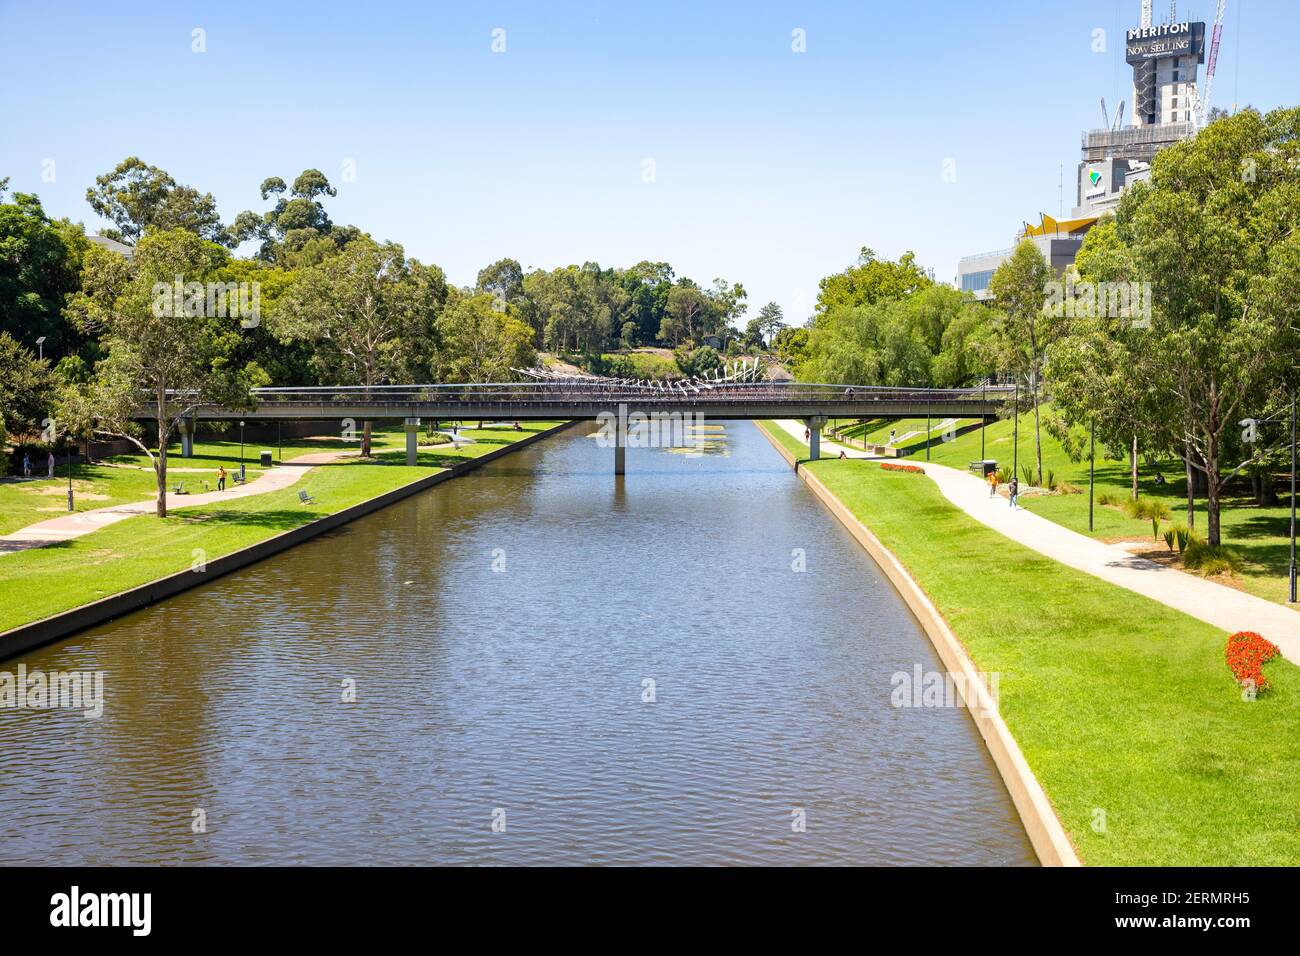 Rivière Parramatta dans le centre-ville avec espace vert ouvert Sur l'estran et le pont piétonnier à travers la rivière parramatta, Western Sydney, Australie Banque D'Images